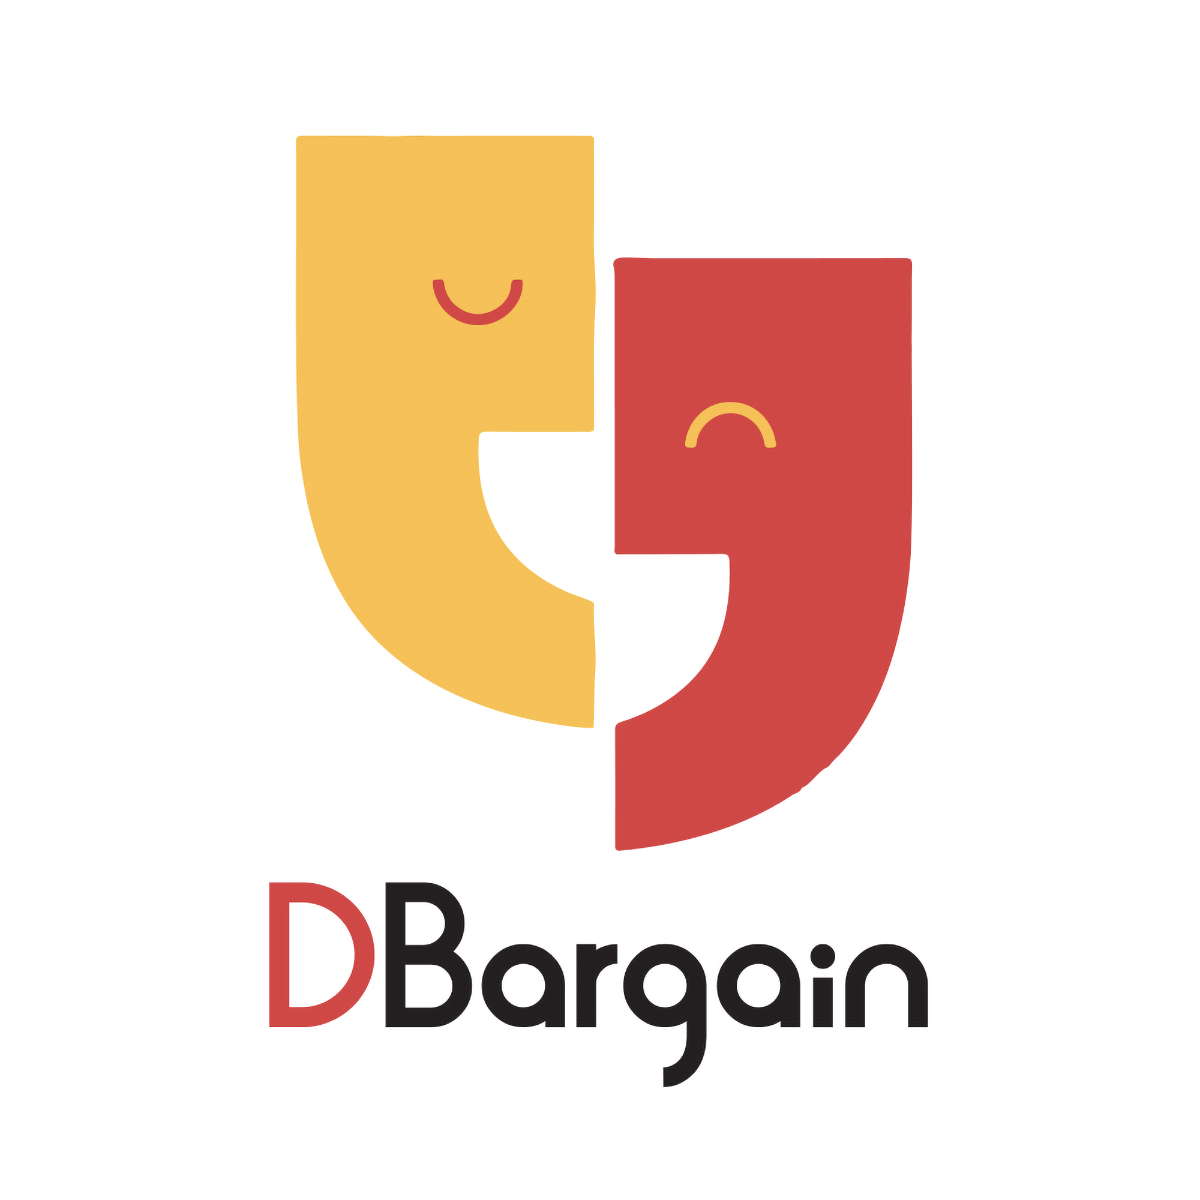 DBargain ‑ Bargaining API